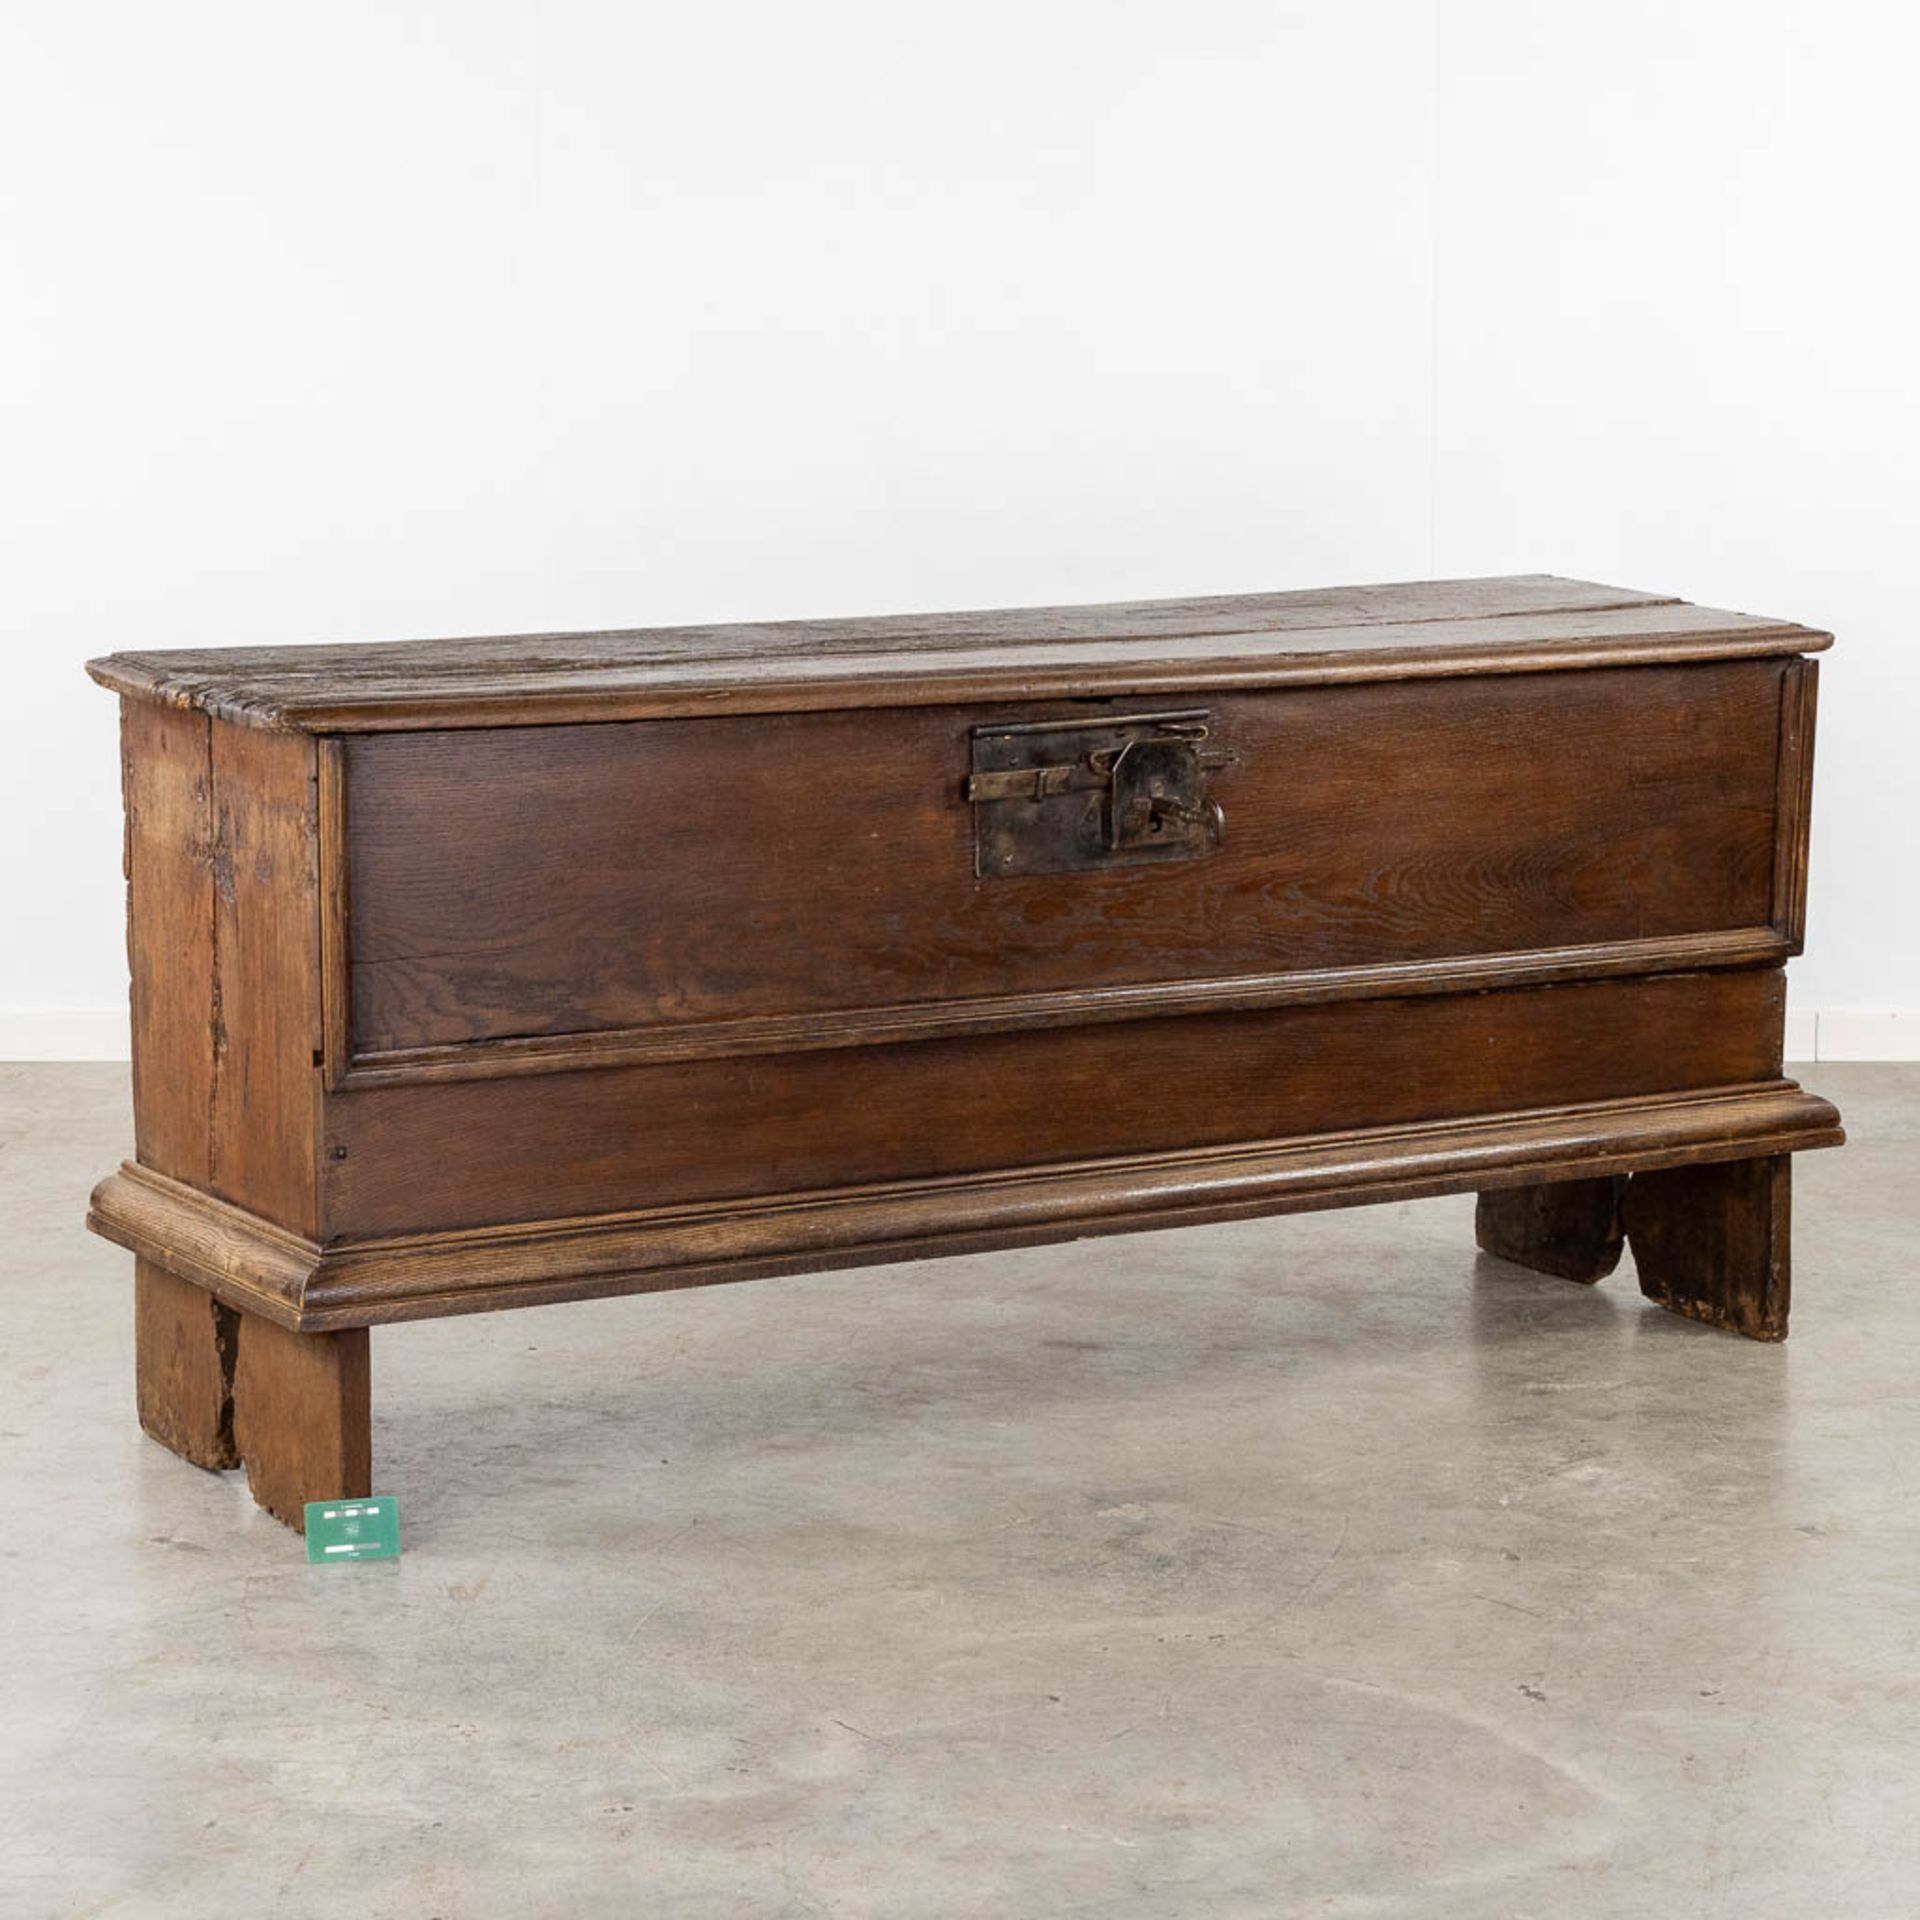 An antique chest. (L:54 x W:176 x H:80 cm) - Bild 2 aus 16